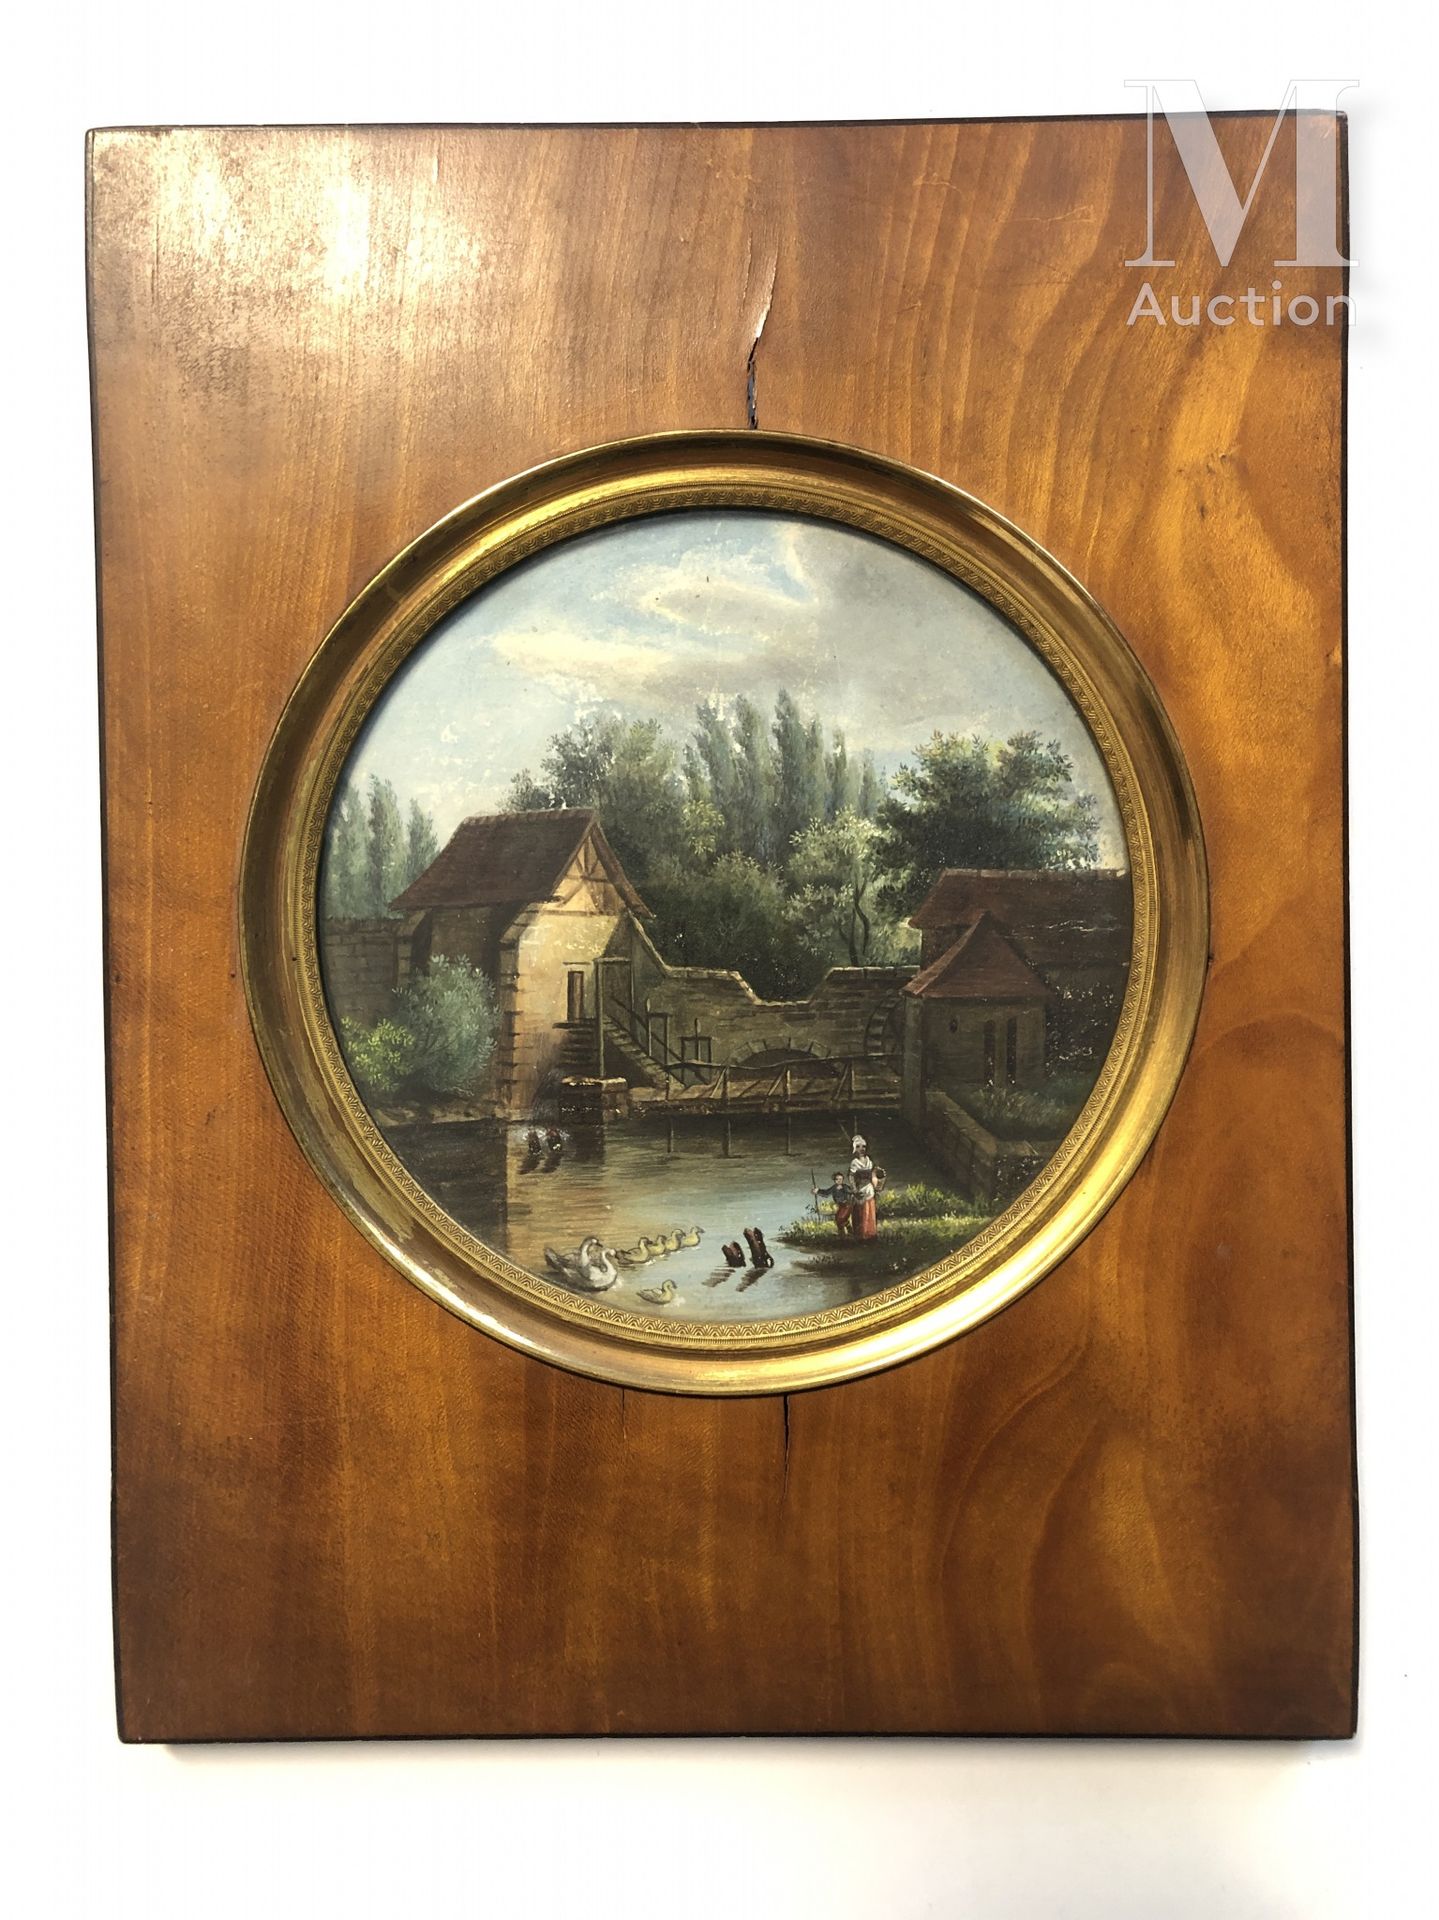 ECOLE FRANCAISE DU XIXème siècle Lavandière près d'un moulin

Gouache 

D 12 cm